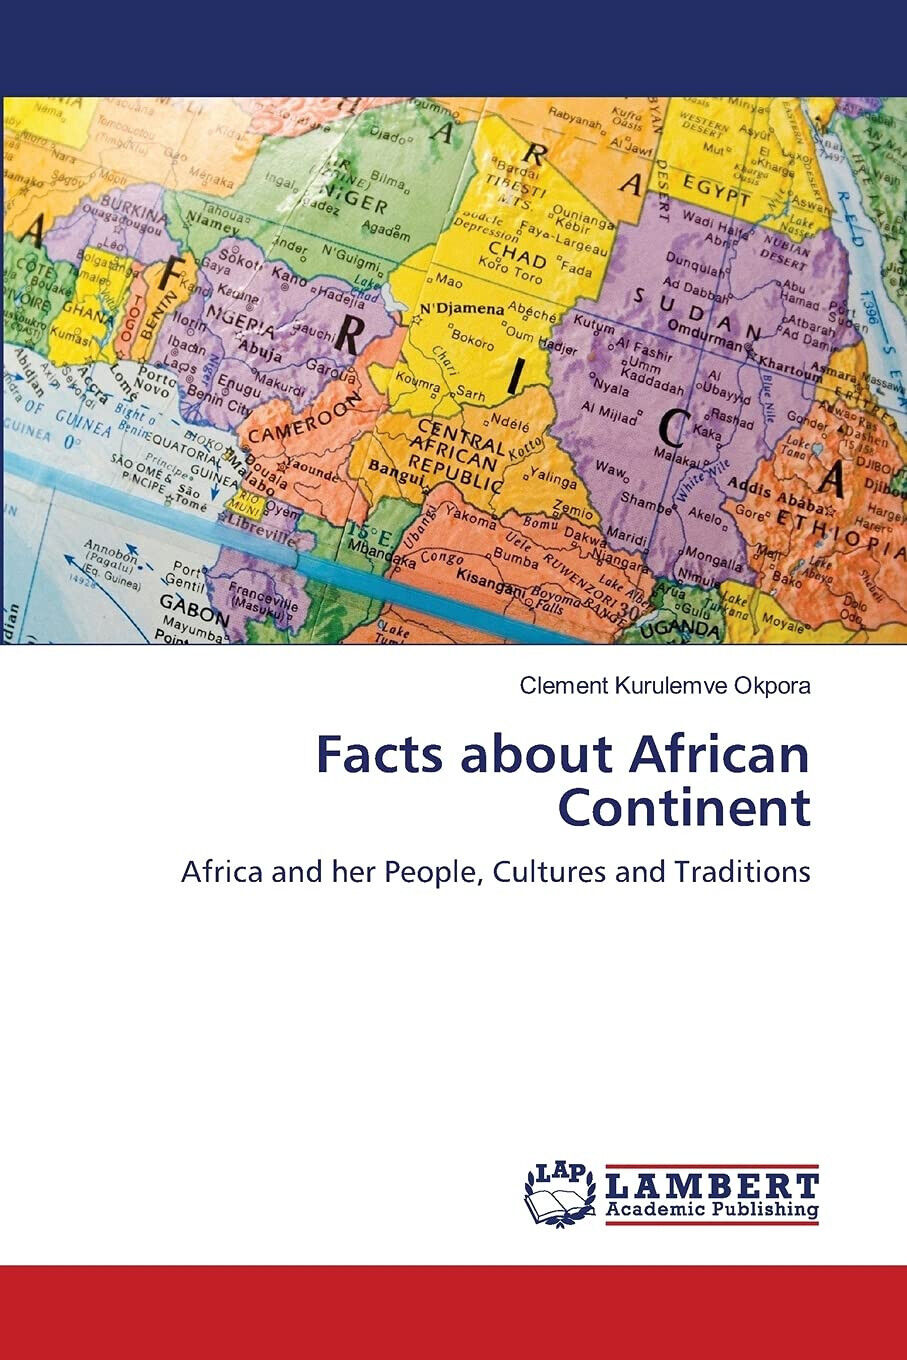 FACTS ABOUT AFRICAN CONTINENT - CLEMENT KURU OKPORA - Lambert, 2021